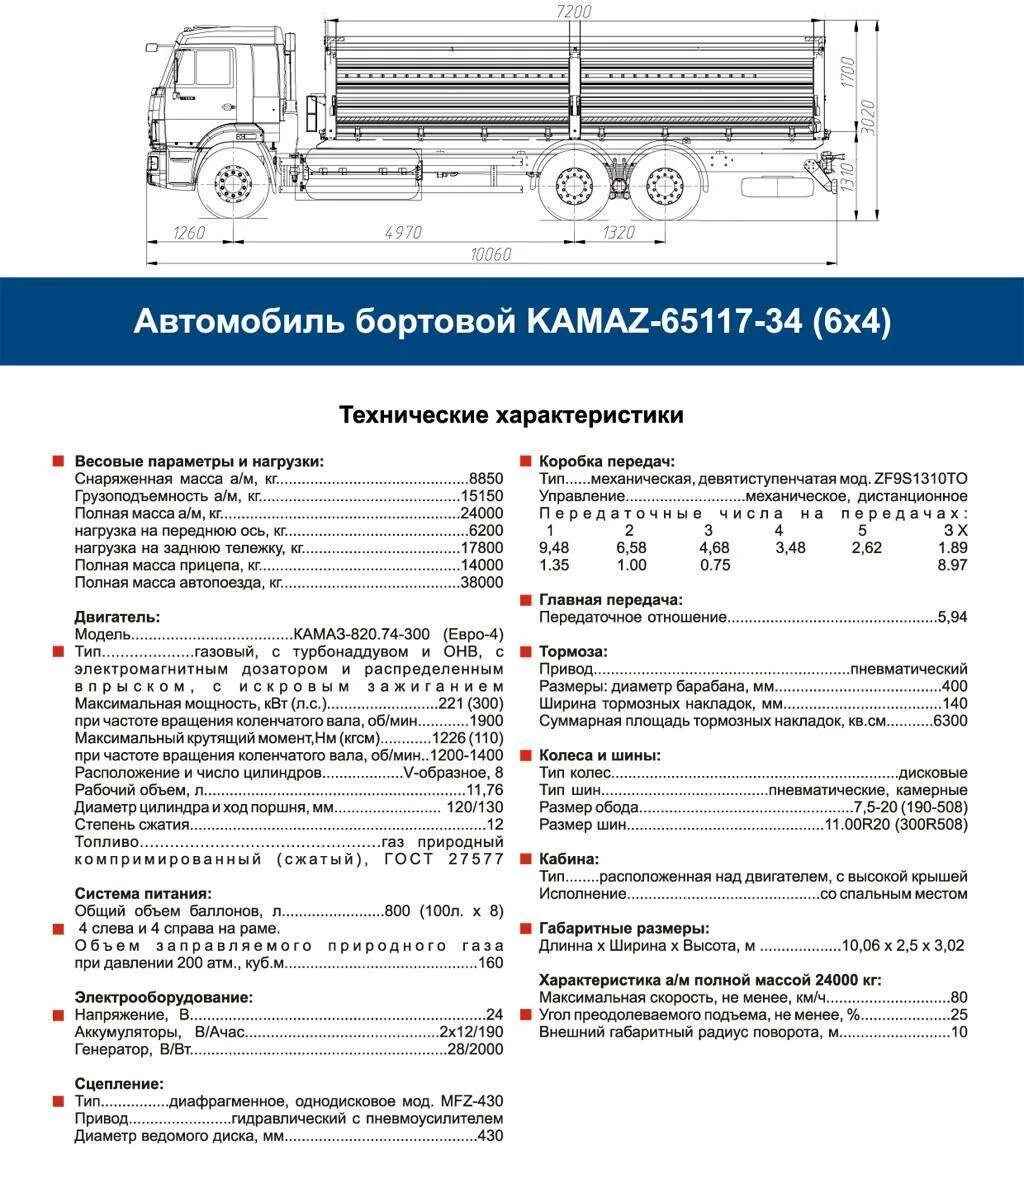 КАМАЗ 65115 бортовой нагрузка на ось. Габариты кузова КАМАЗ 65117 бортовой. КАМАЗ 5320 бортовой технические характеристики грузоподъемность. Габариты КАМАЗ 65115 бортовой.